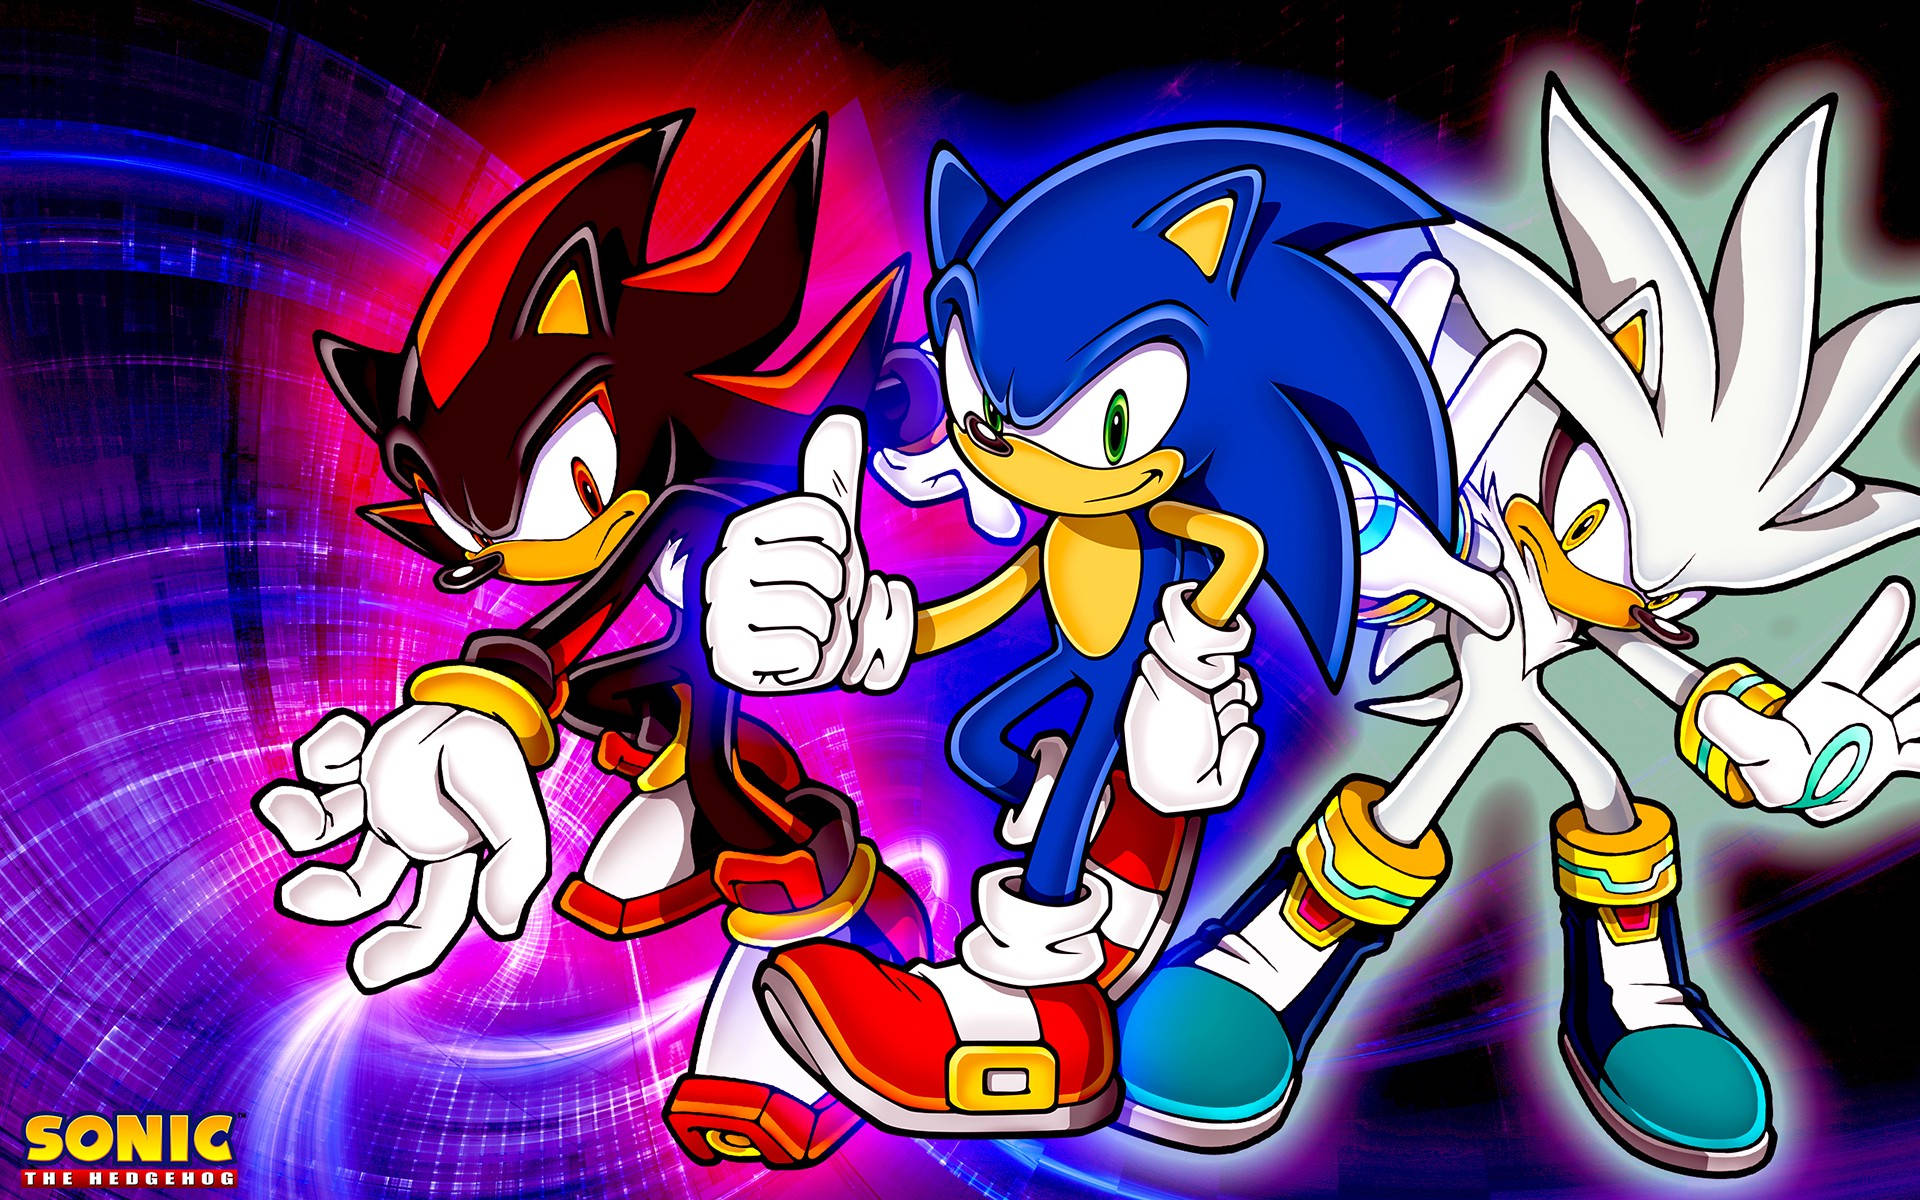 Cool Sonic Adventures 2 Wallpaper